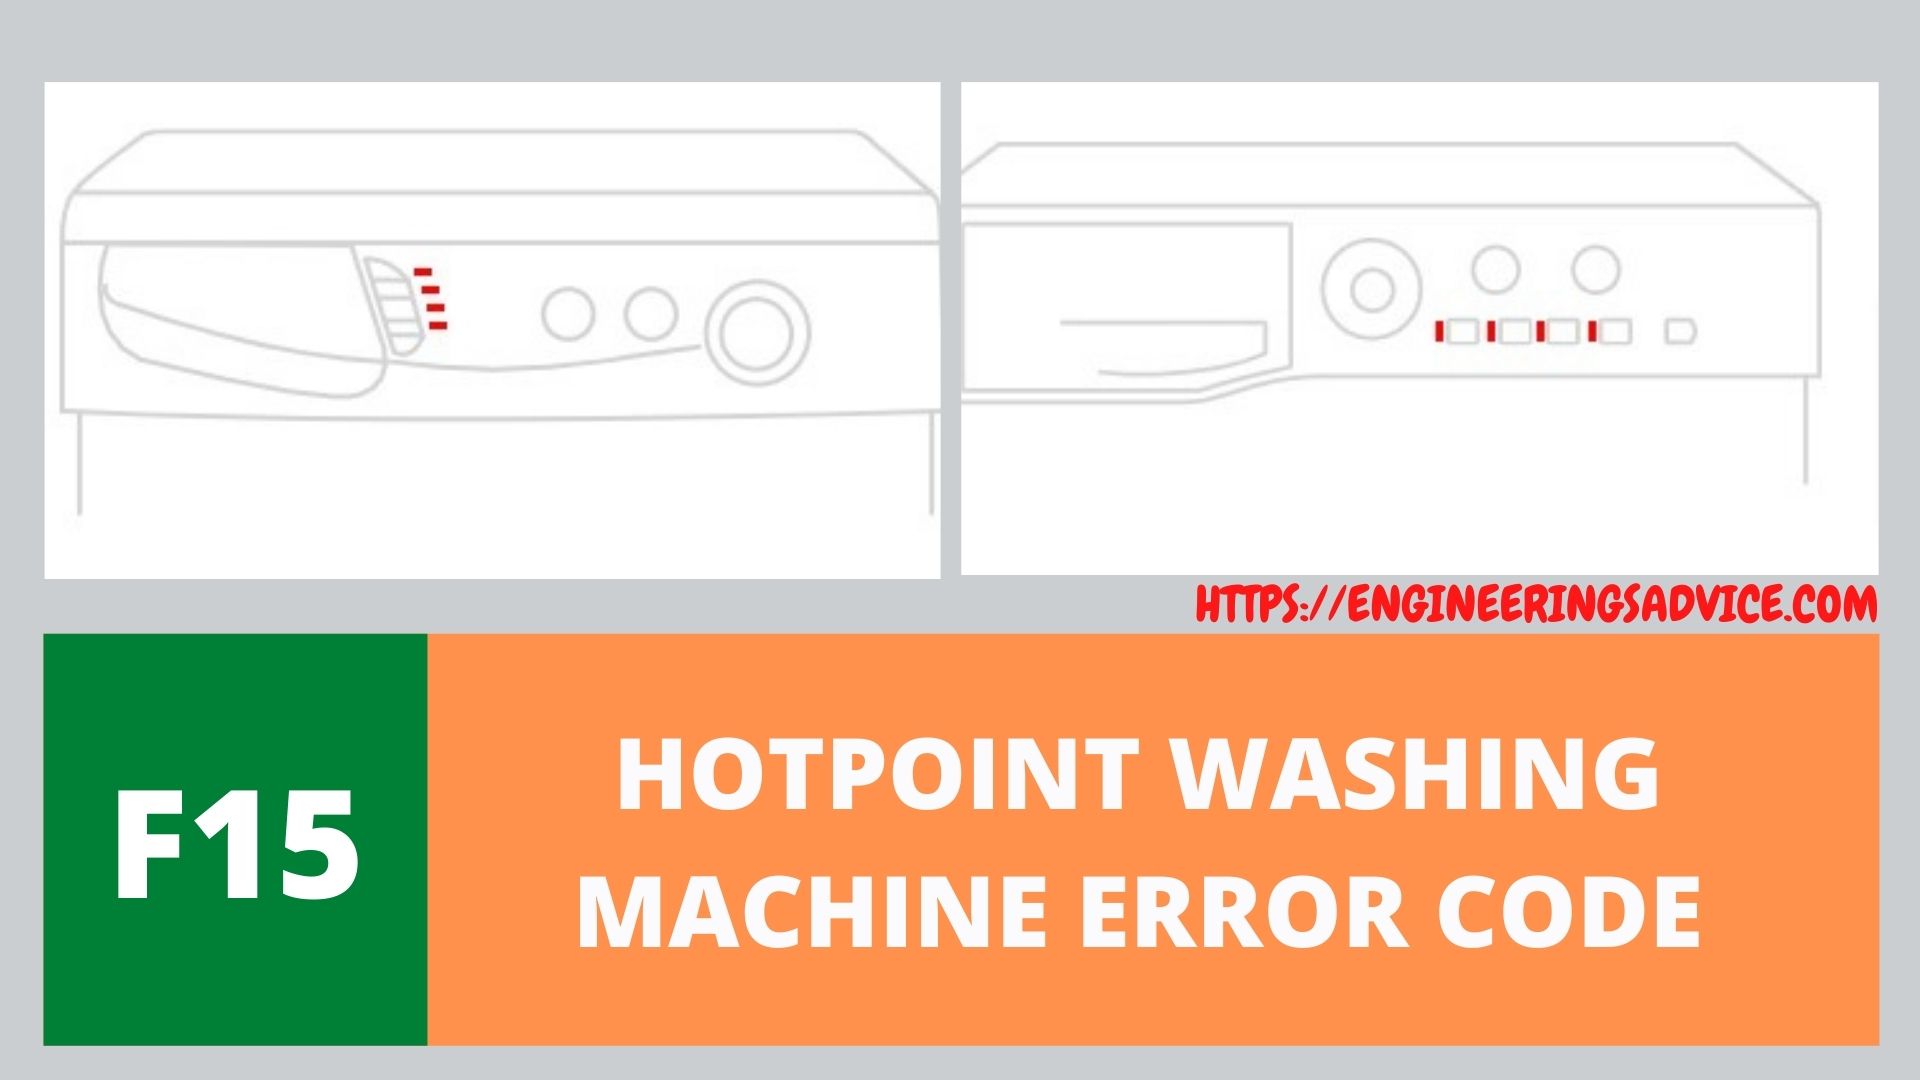 F15 Hotpoint Washing Machine Error Code And Symbols